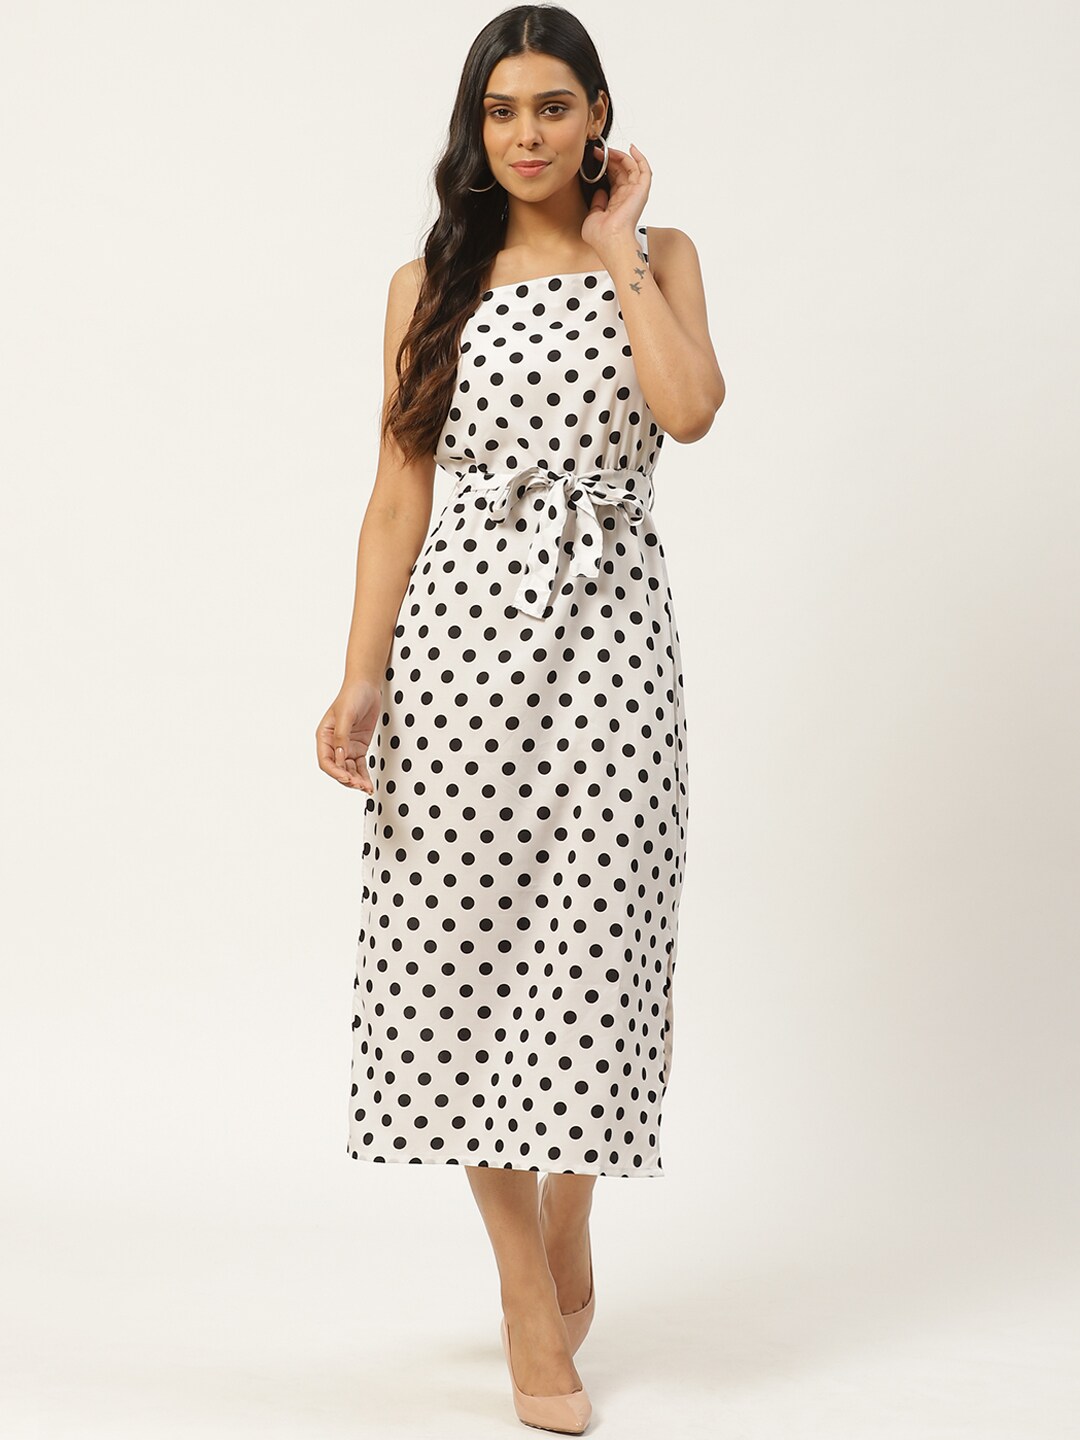 SIRIKIT Women White & Black Polka Dot Printed A-Line Dress